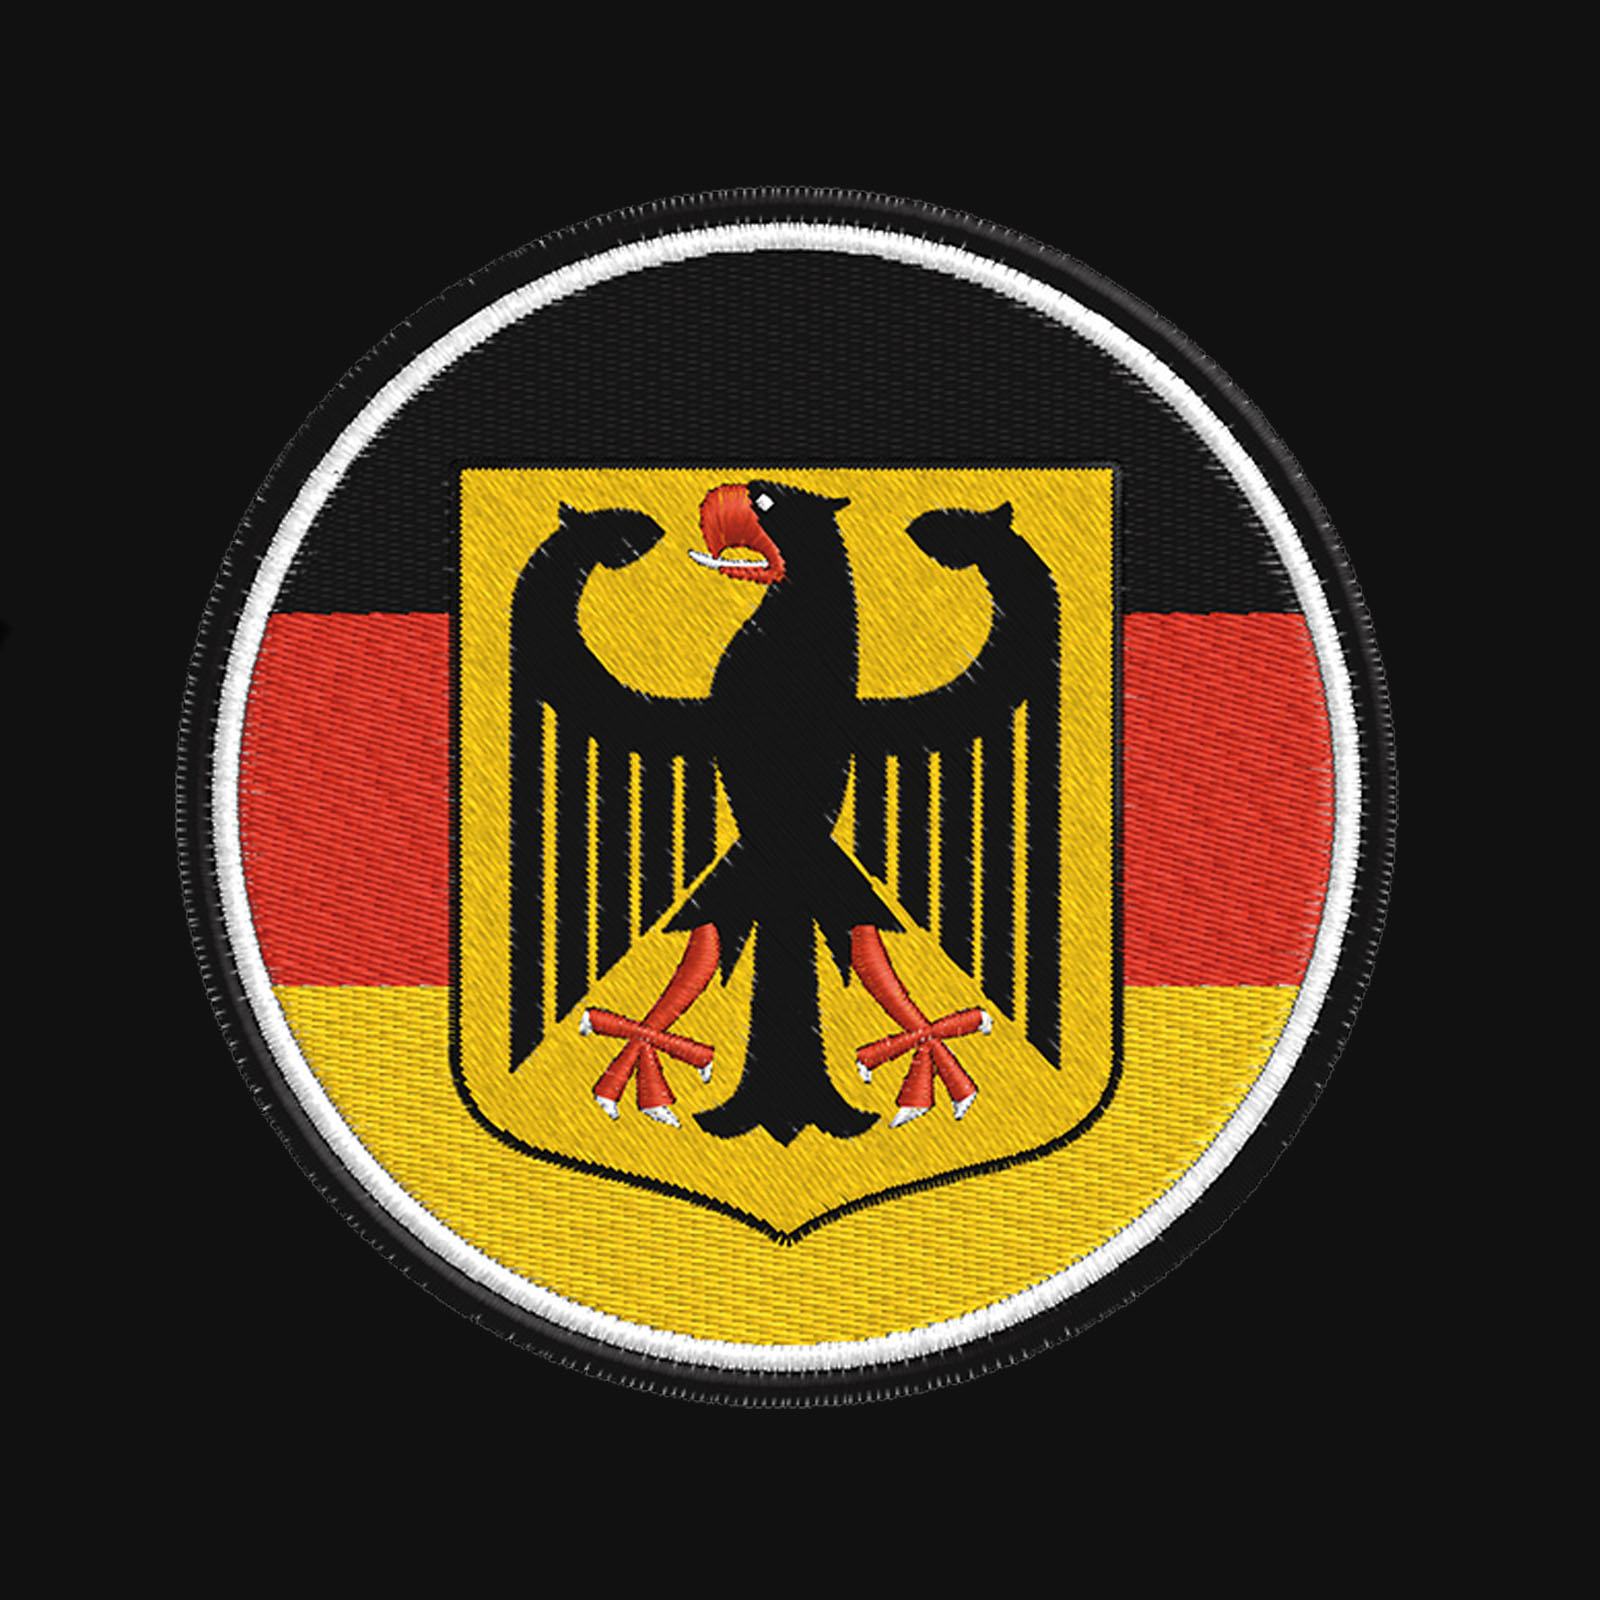 Зачетная толстовка с флагом Германии заказать выгодно